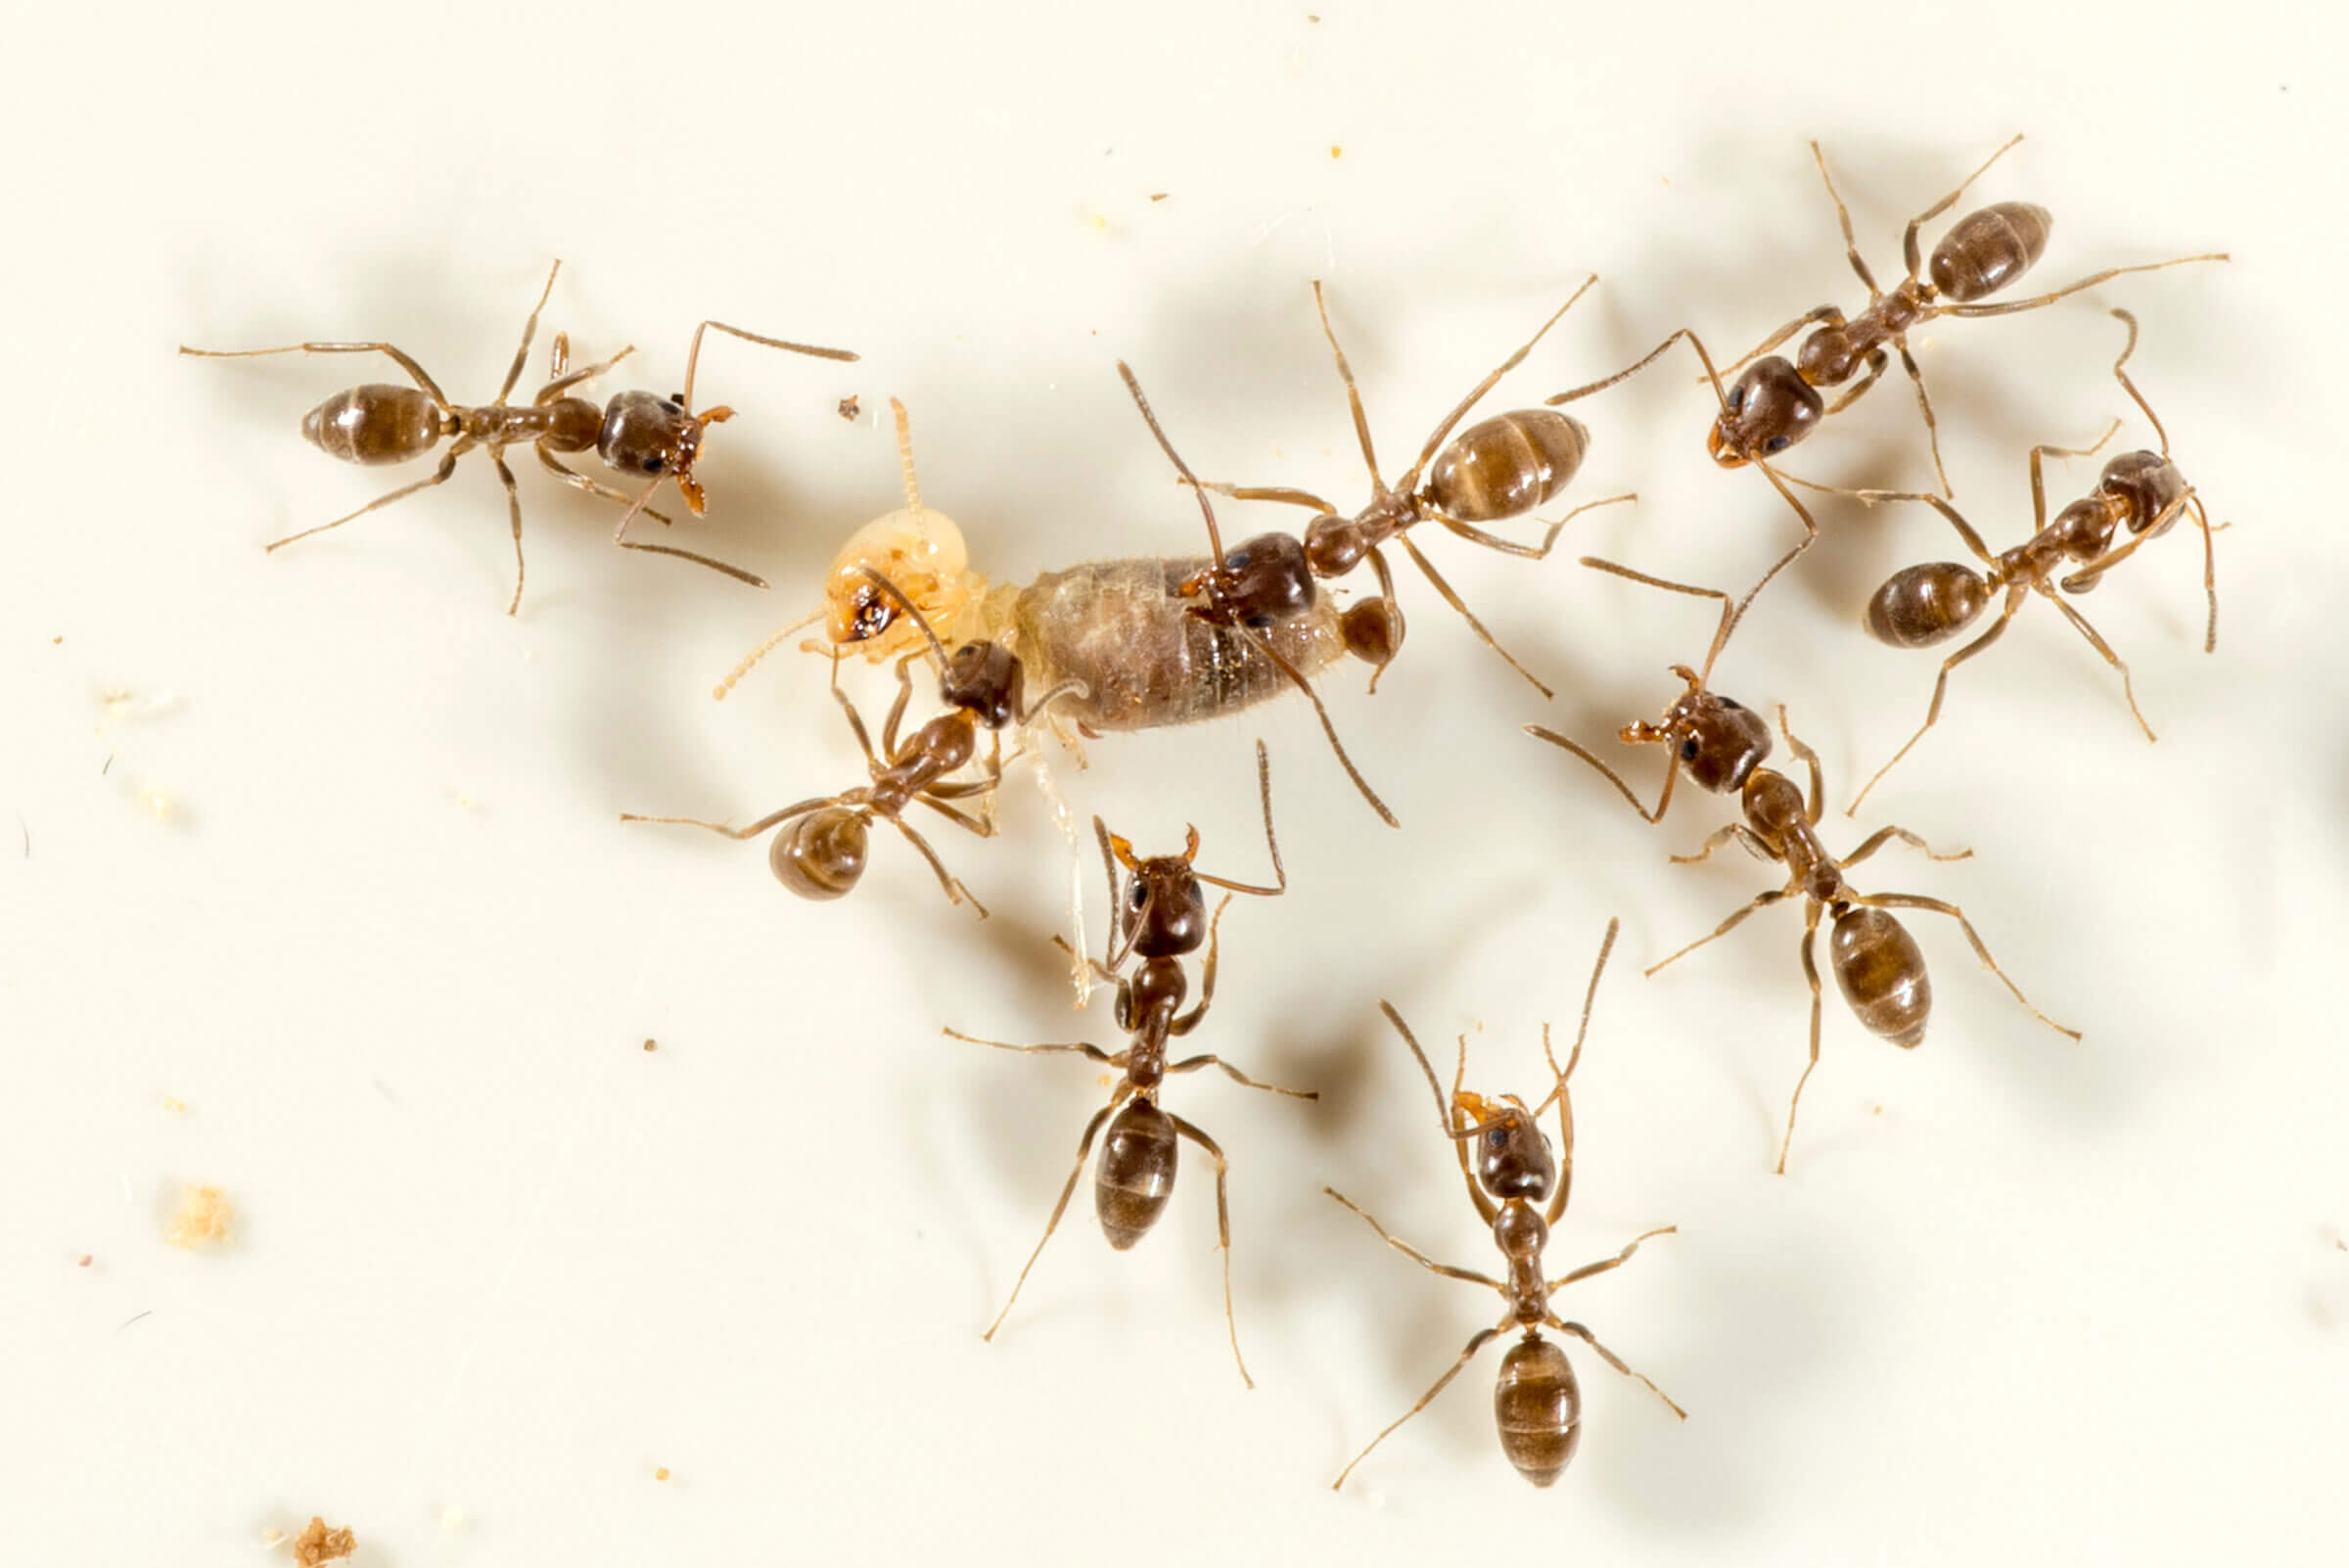 Do Ants Eat Termites